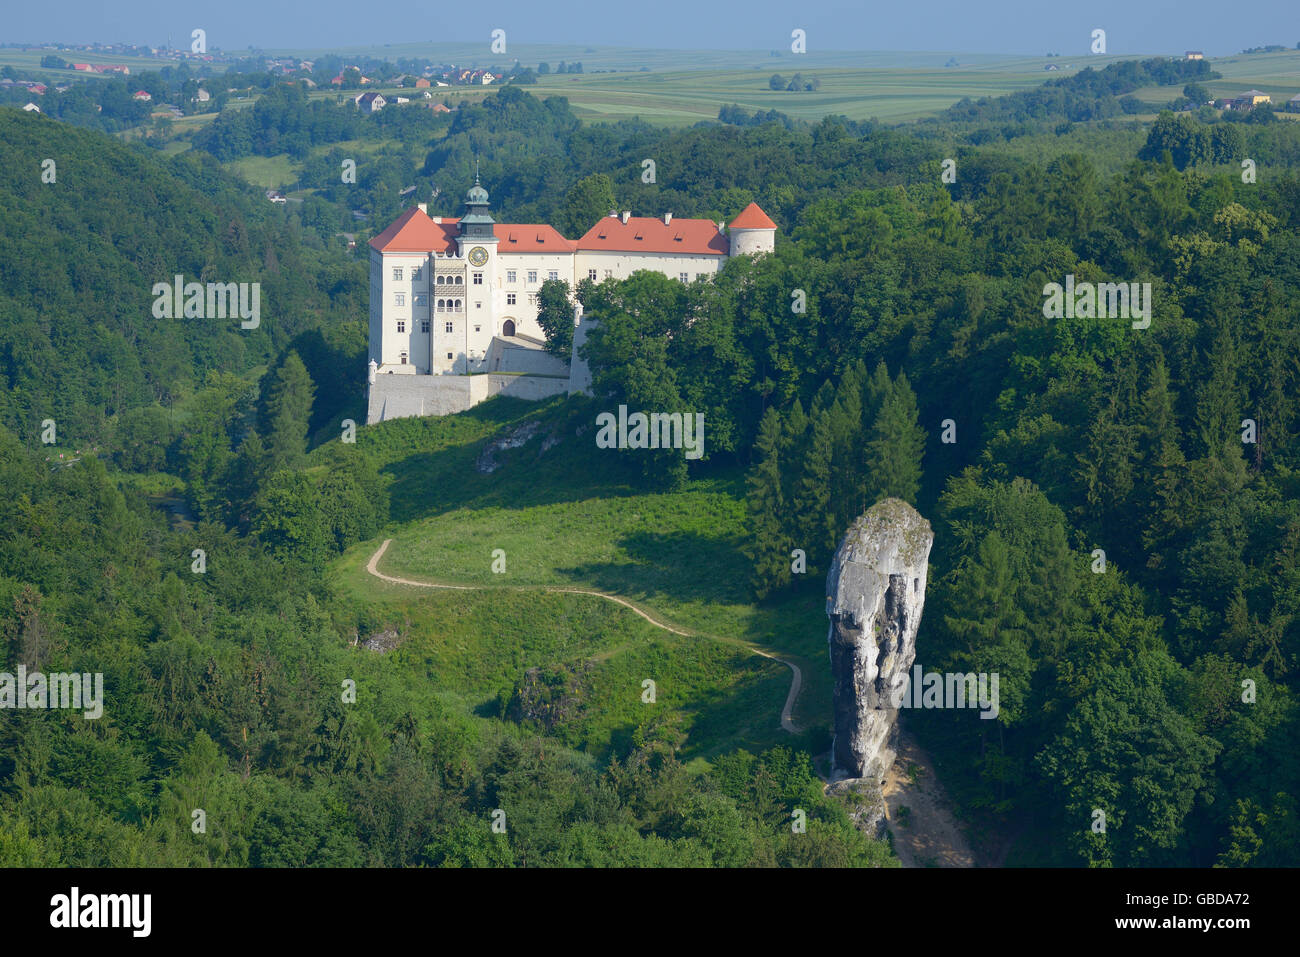 VUE AÉRIENNE.Château de Pieskowa Skala avec son monadnock calcaire en premier plan.Suloszowa, petite Pologne Voivodeship, Pologne. Banque D'Images